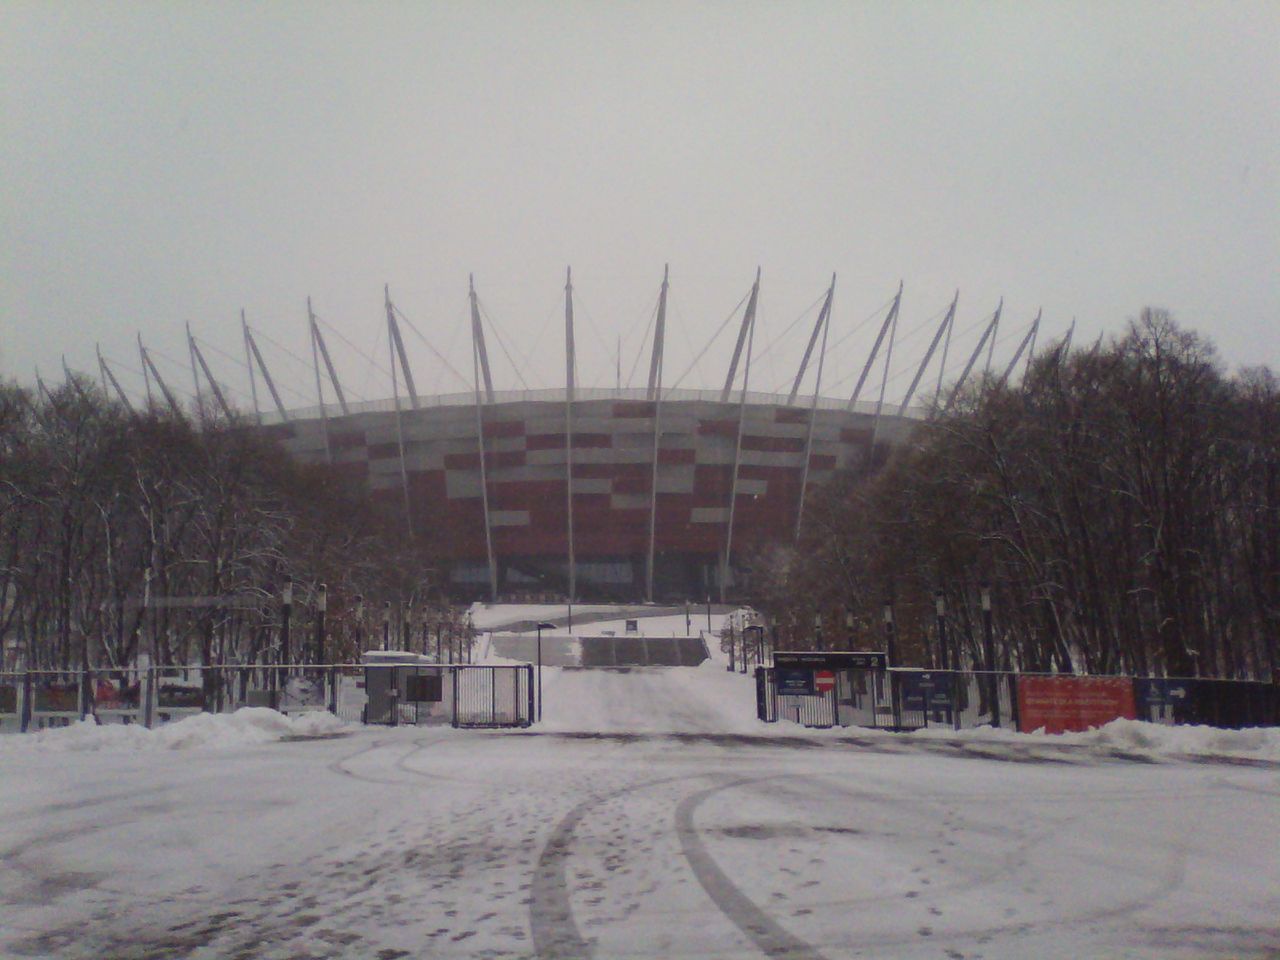 Stadion Narodowy w (jeszcze) zimowej scenerii. Chyba nieprzypadkowo kolor stadionu jest taki sam jak kolor czapki Red Hata :)